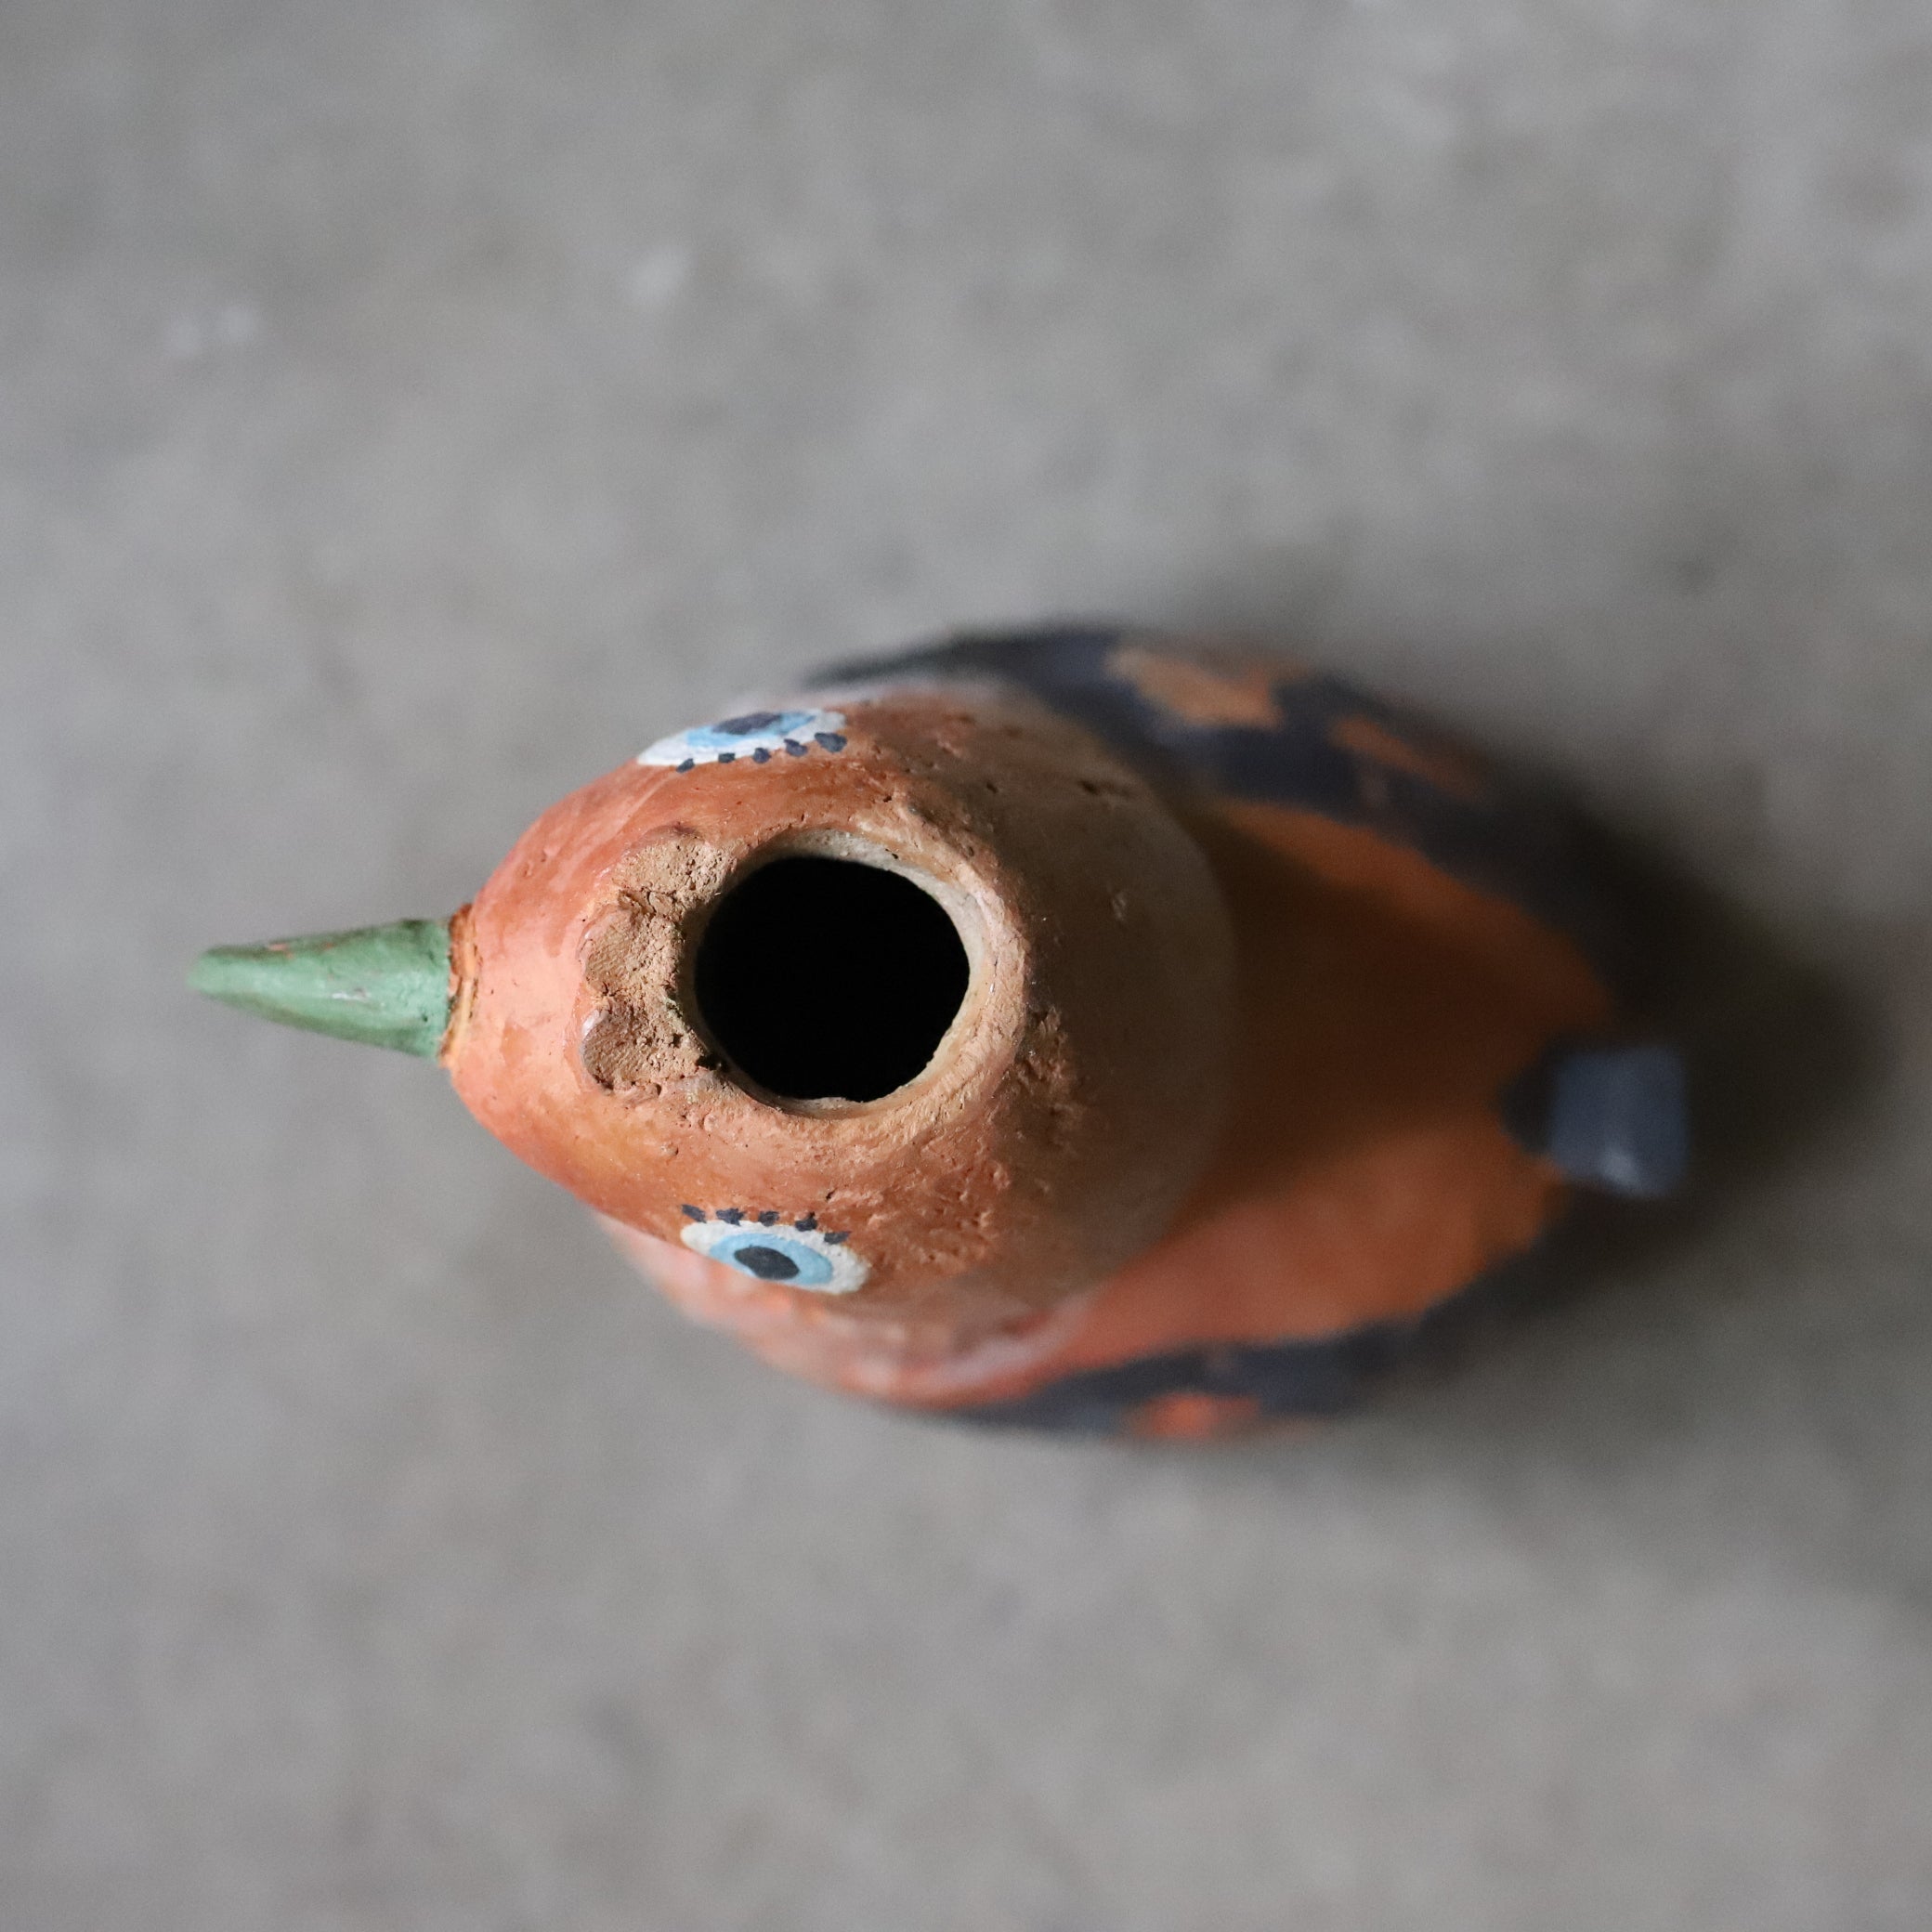 Hiroki Miura 〈Bird Vase〉#9